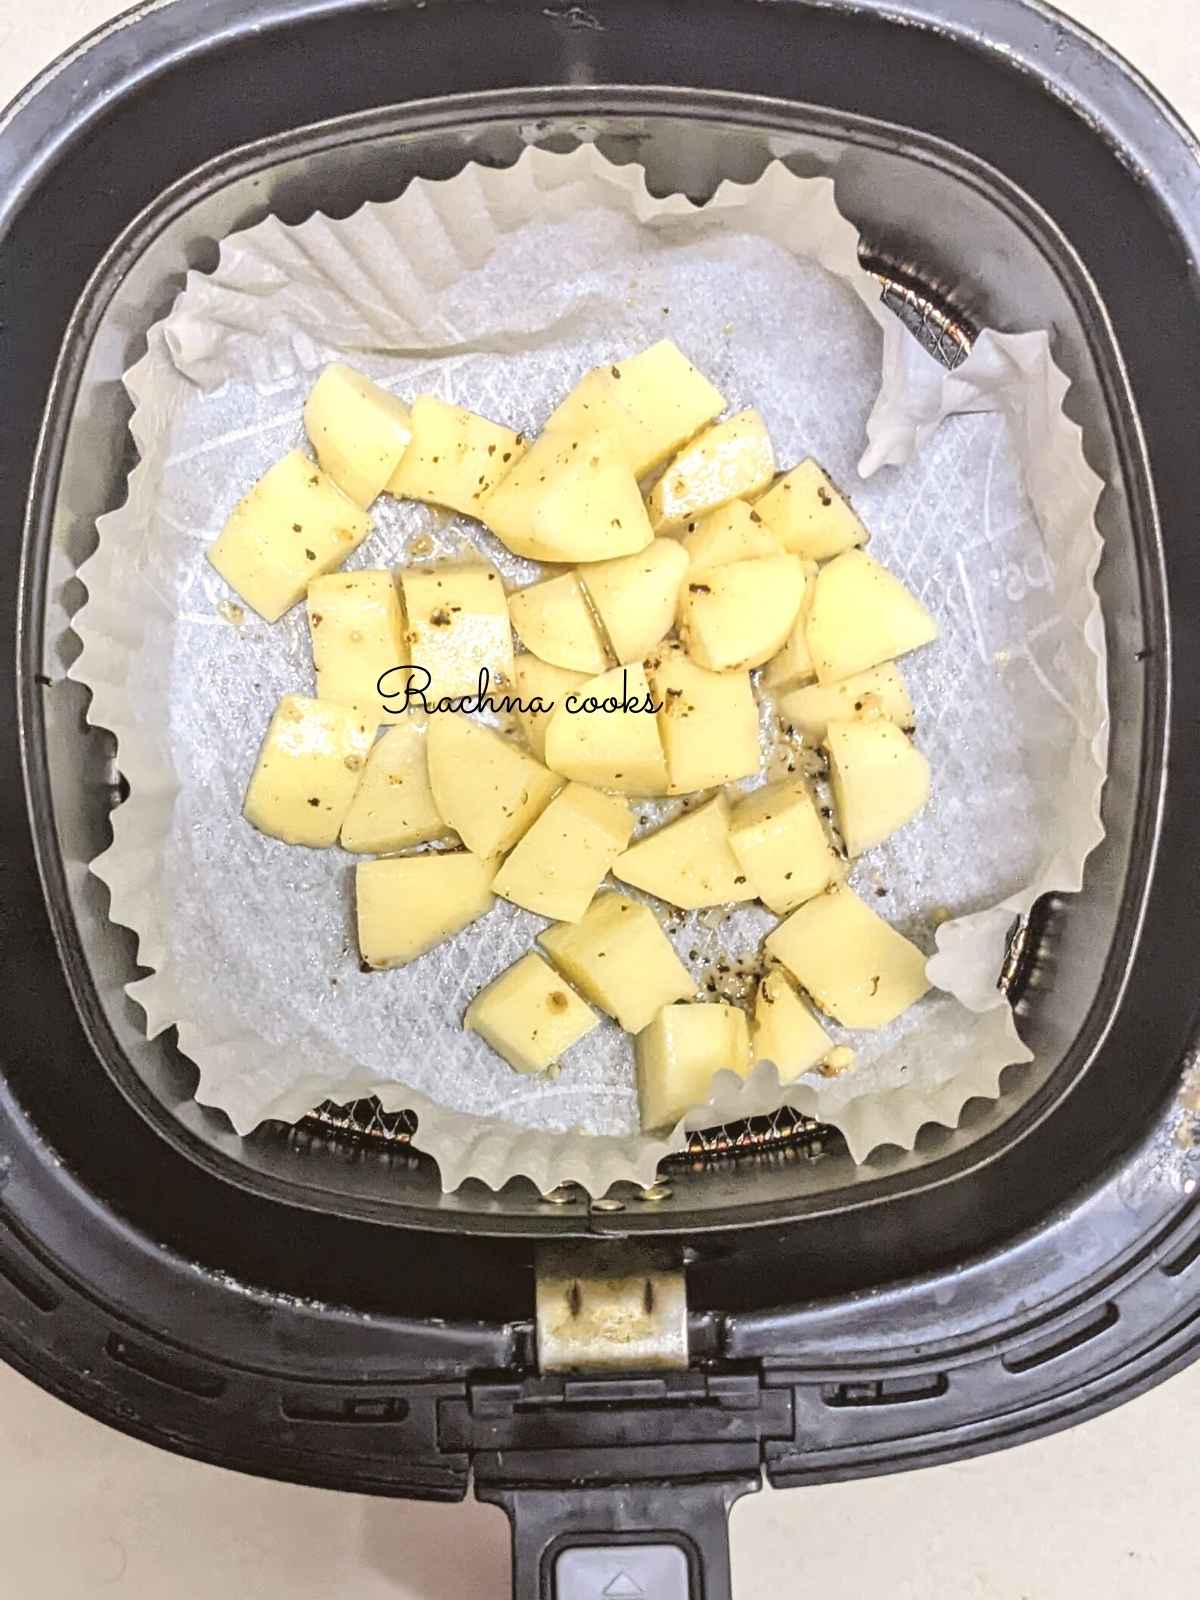 Potato cubes on a parchment paper dish in air fryer basket.